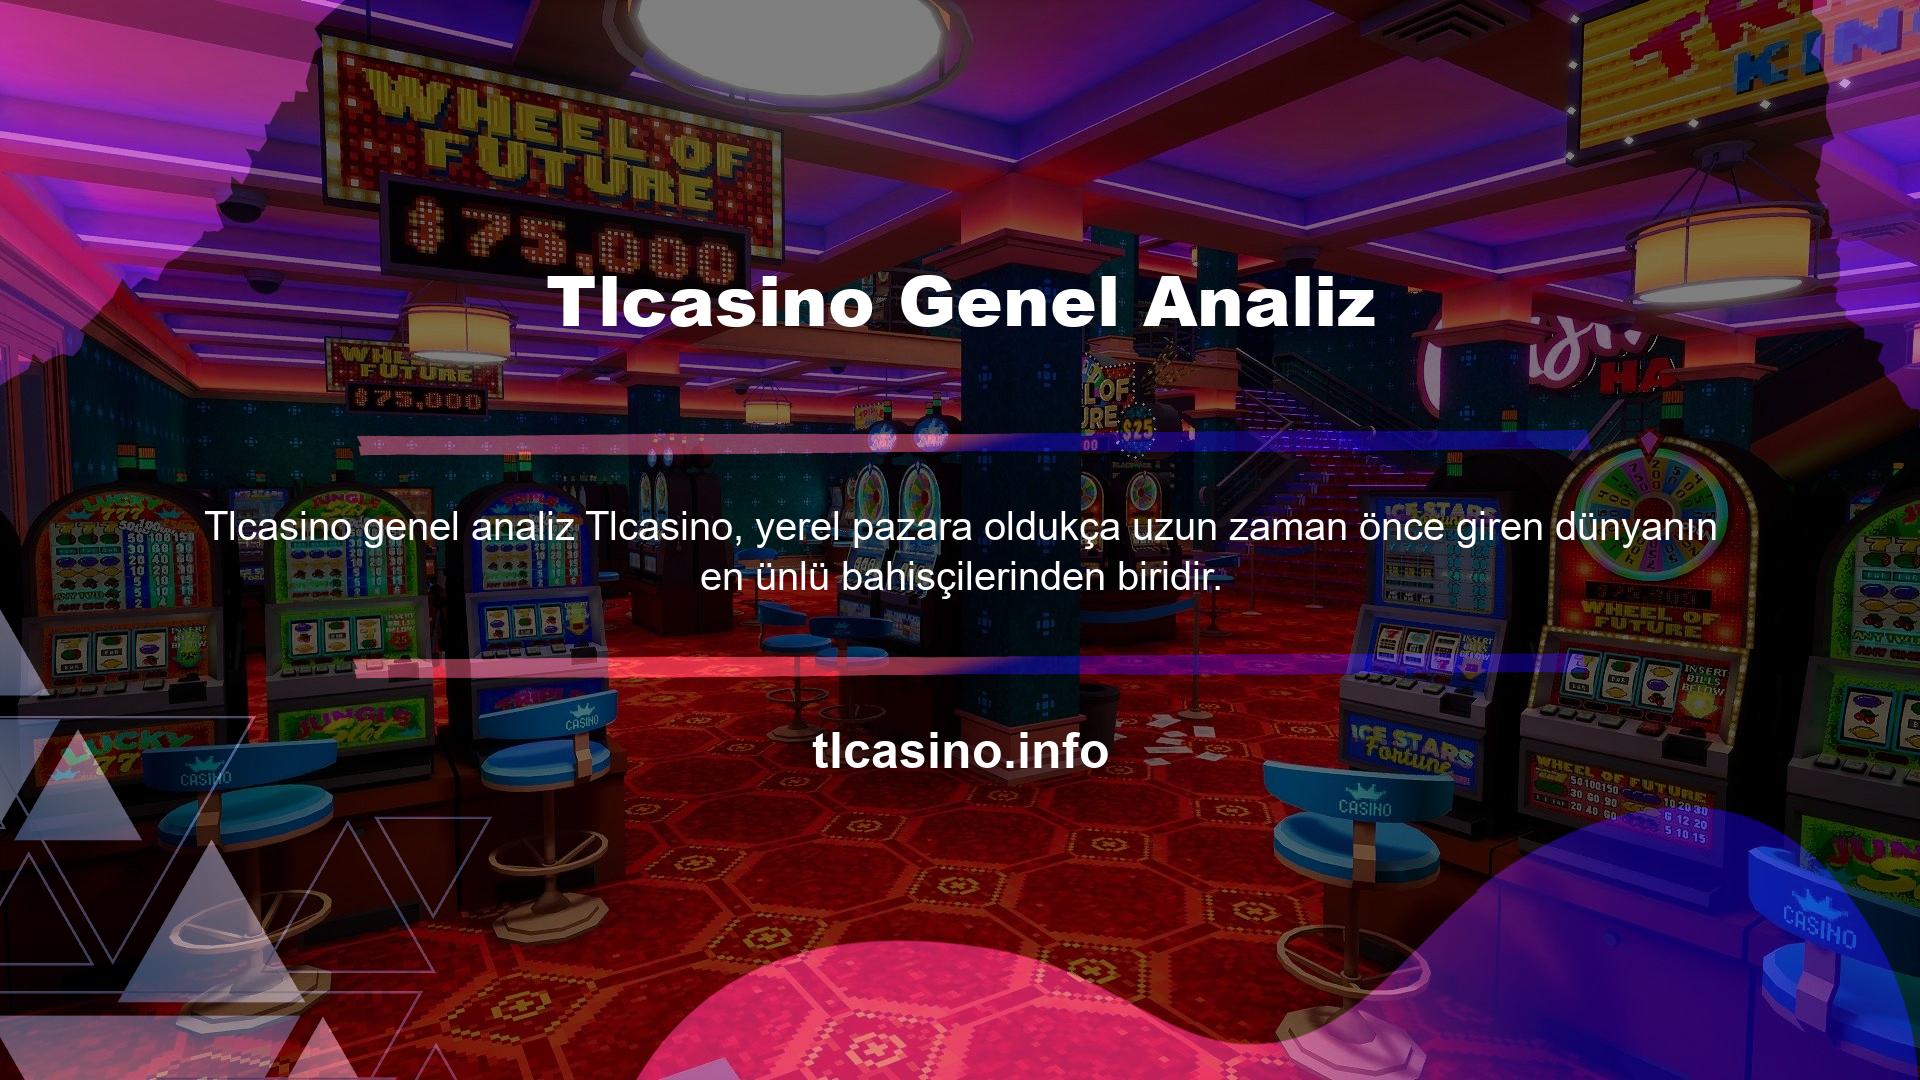 Tlcasino, Türkiye pazarında en çok ziyaret edilen şirketlerden biridir ve yüksek reytingleri, geniş oyun yelpazesi ve promosyonları nedeniyle üyelerinden olumlu eleştiriler almaktadır